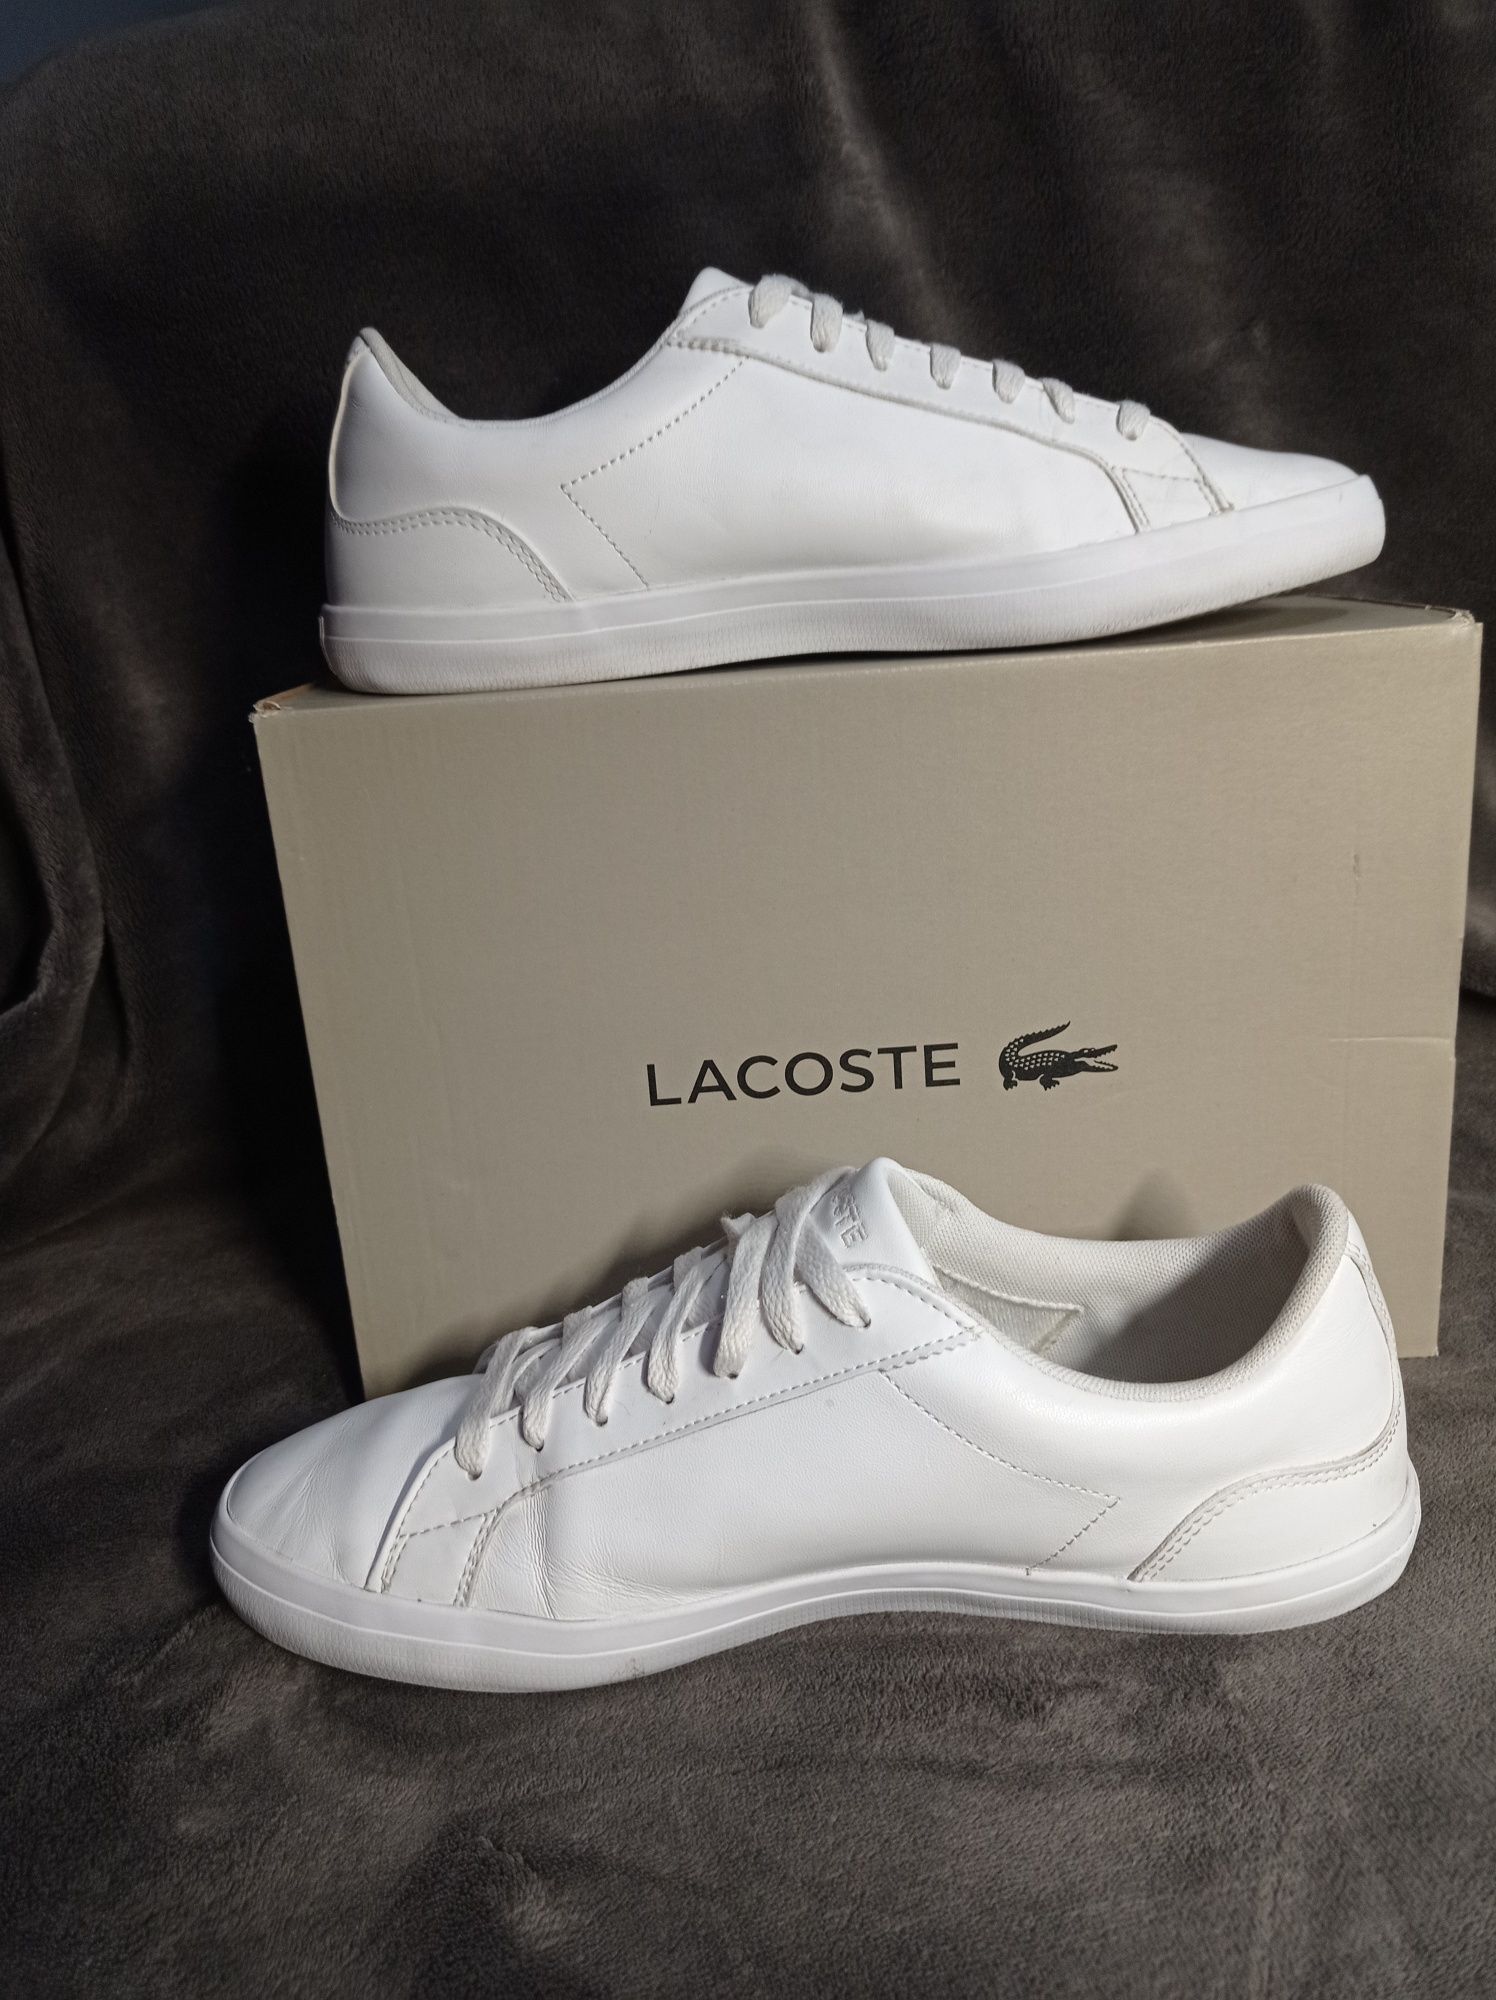 Buty Lacoste Lerond rozmiar 44 wkładka 28 cm białe skóra trampki 45